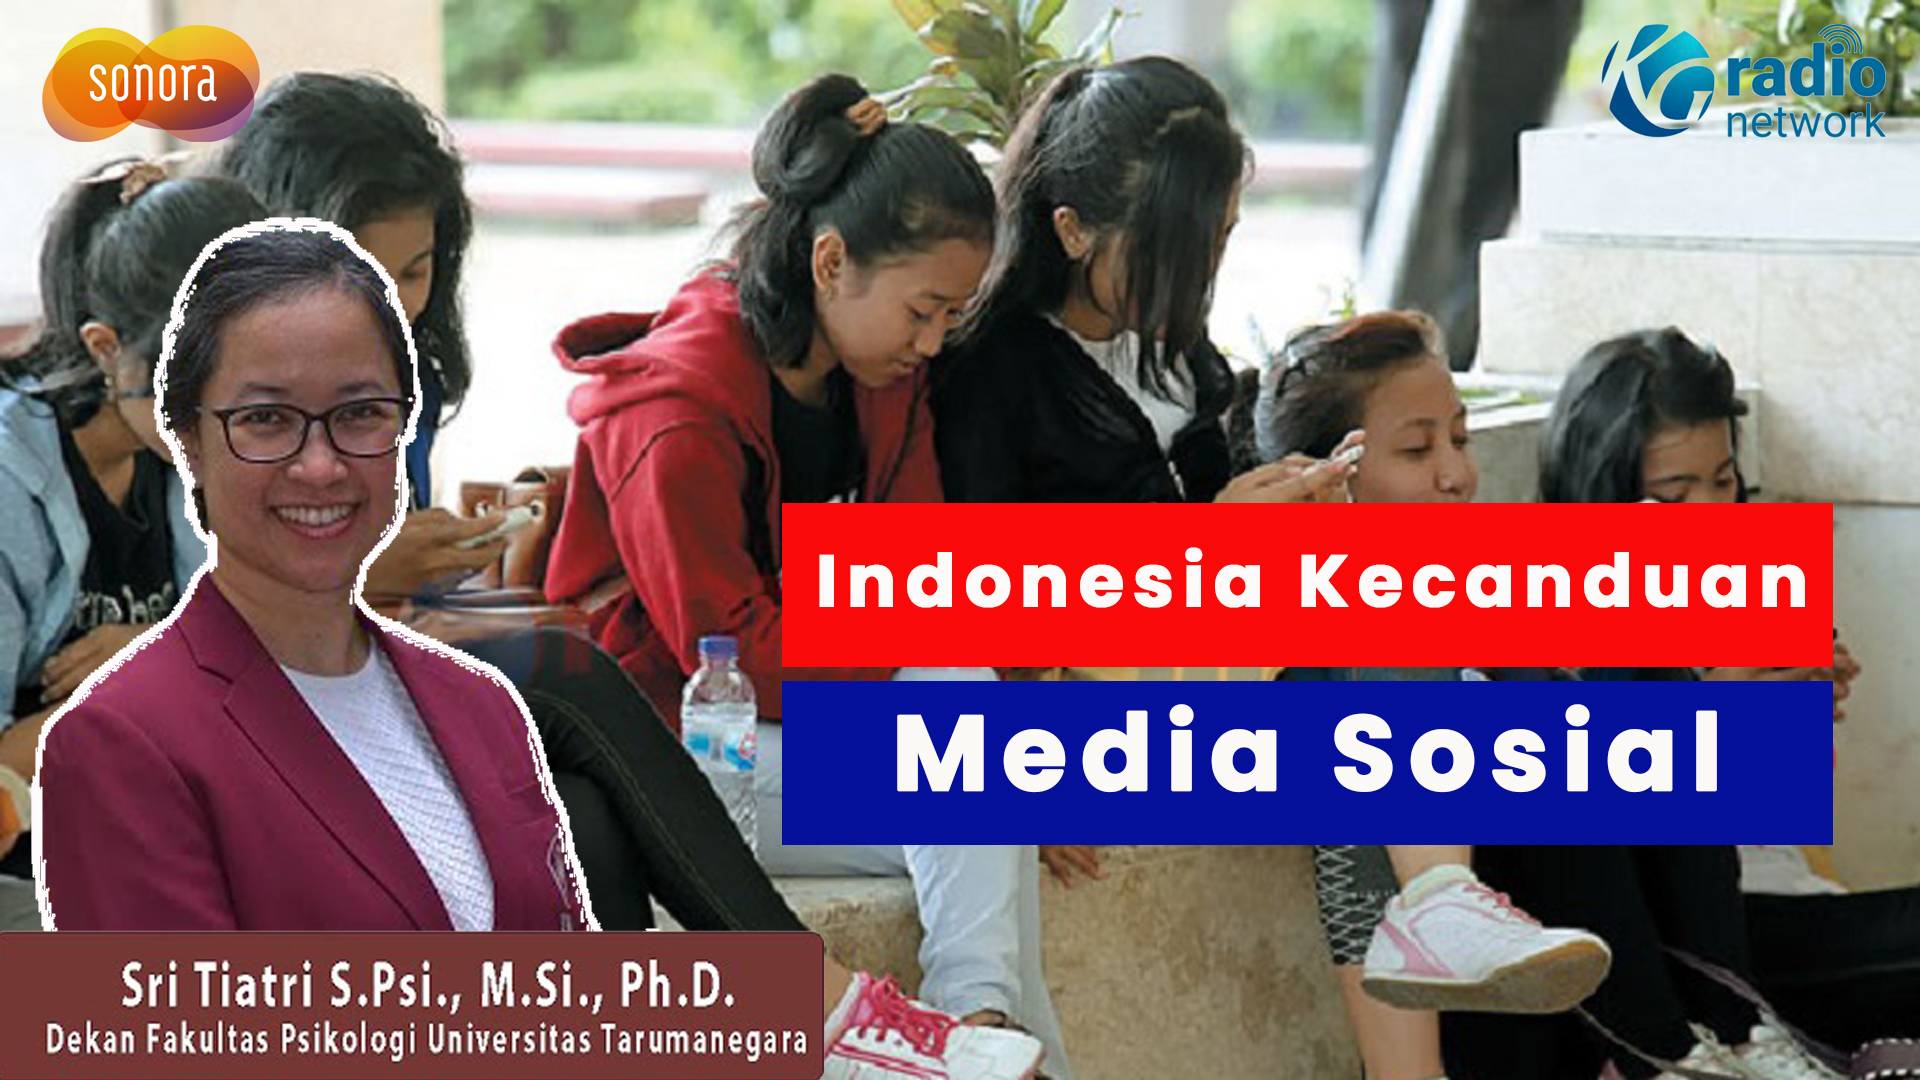 Indonesia Termasuk 10 Besar Negara Kecanduan Media Sosial